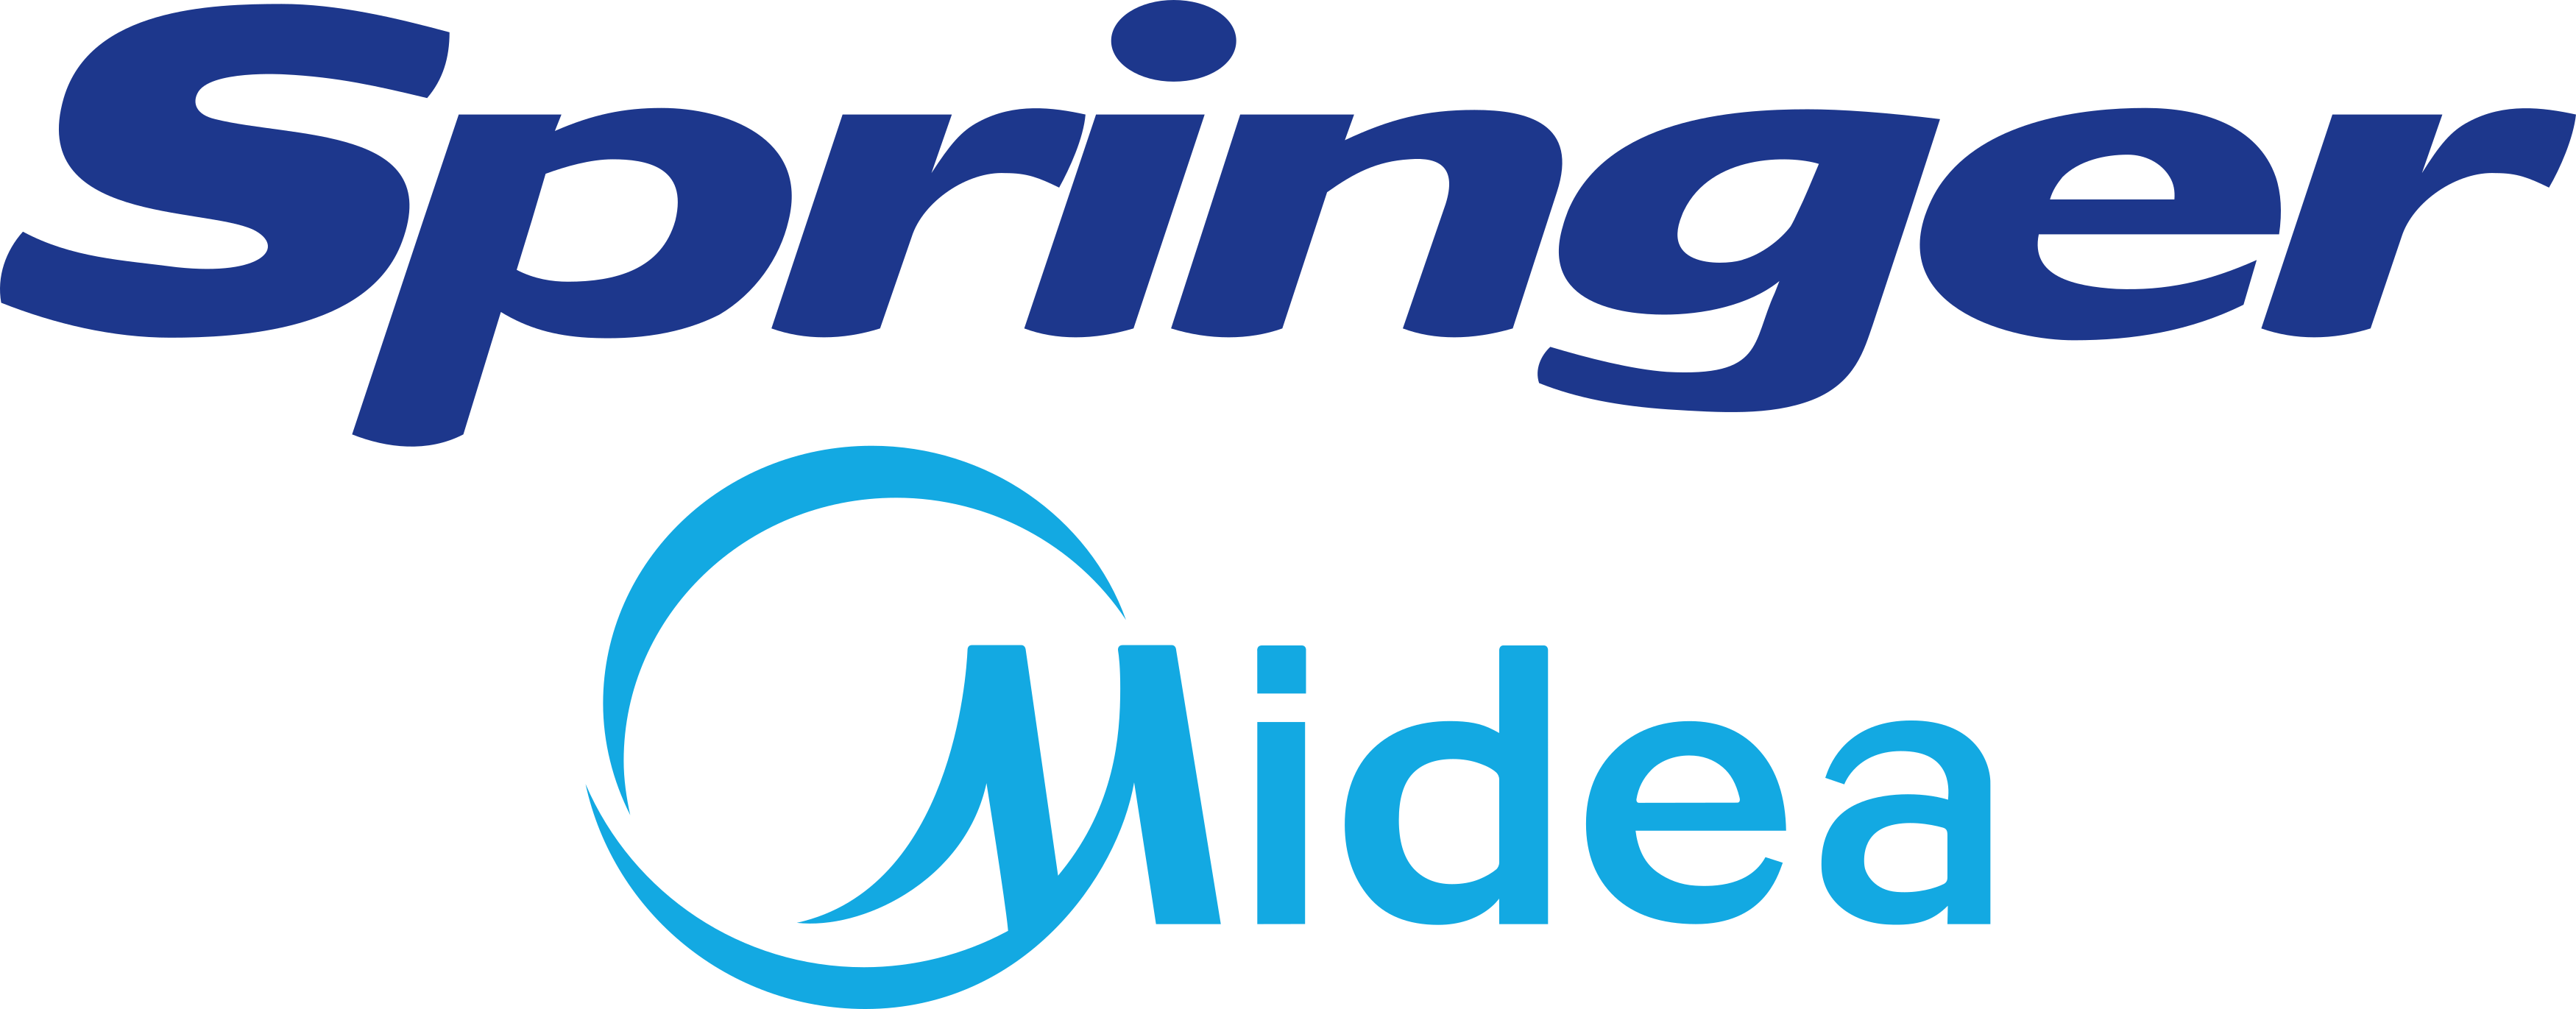 springer-logo-1.png